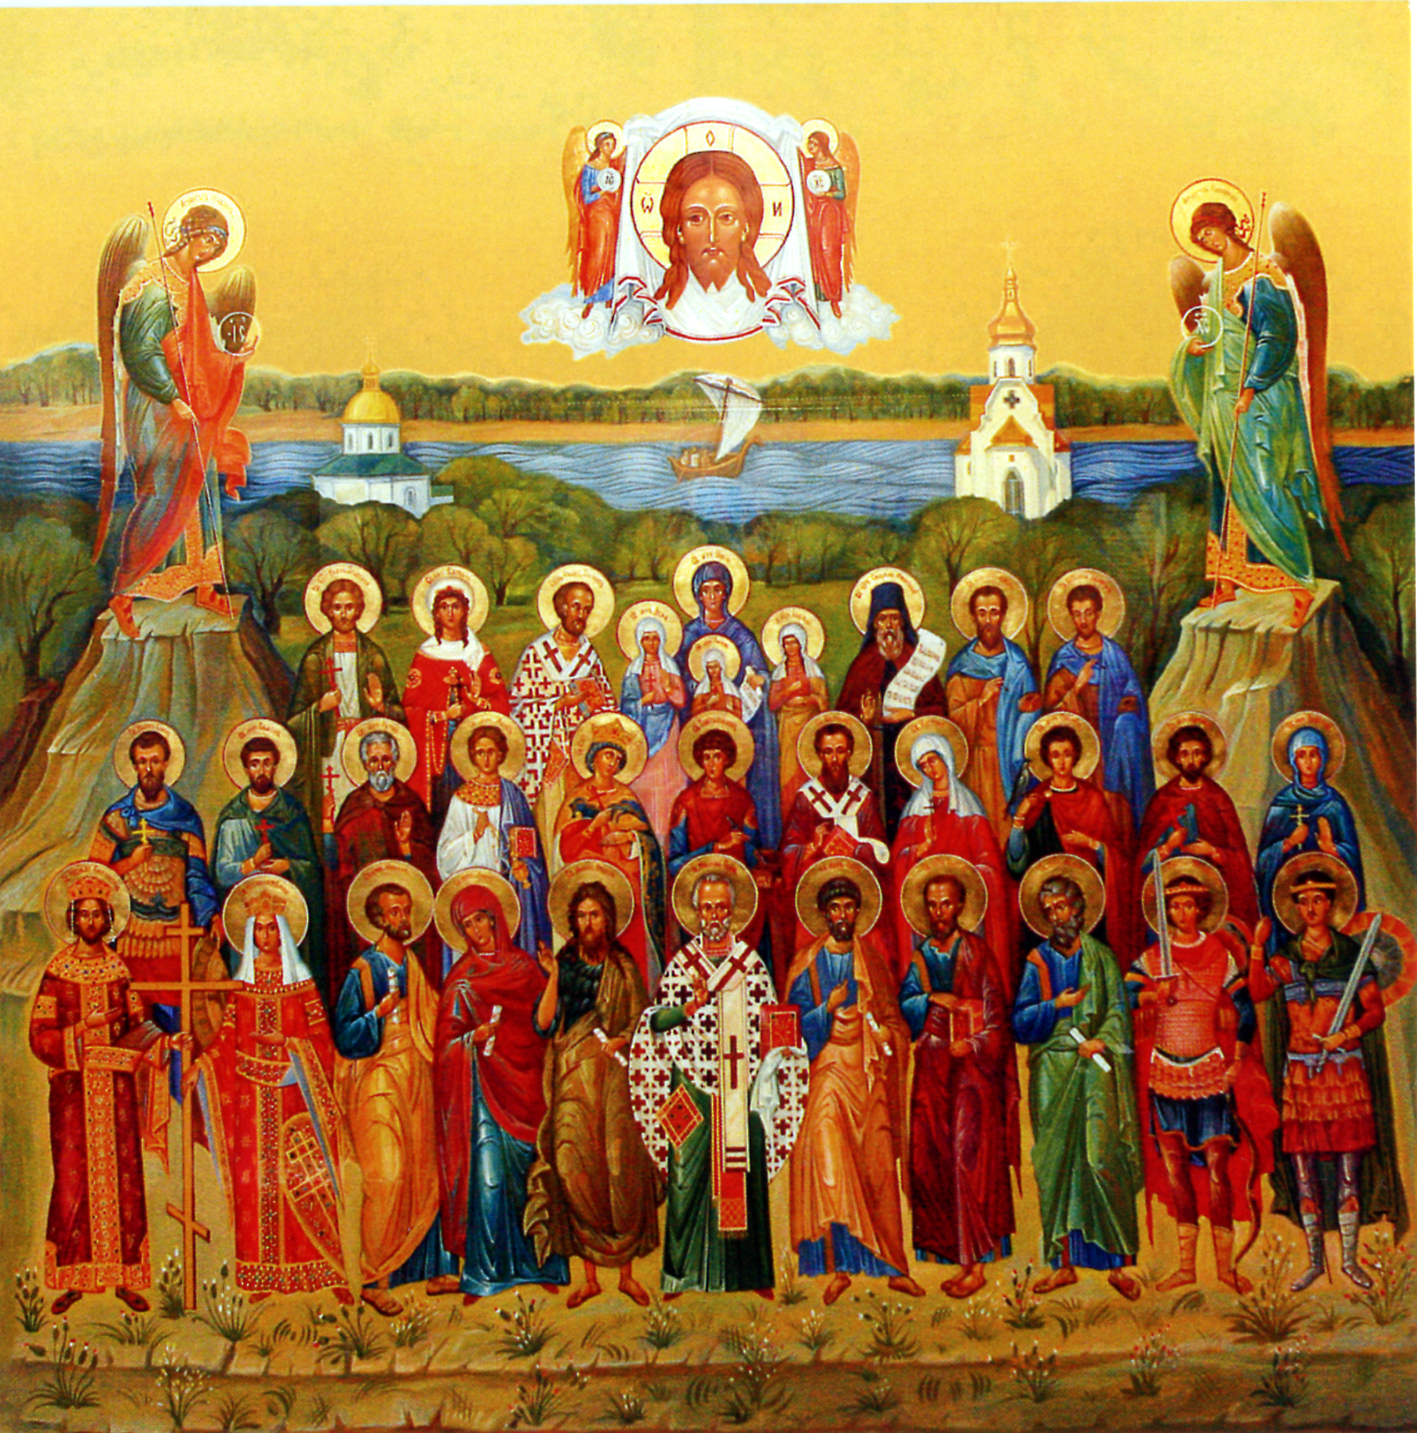 Русские православные святители. Иконы святых угодников Божиих. Икона всех святых угодников.